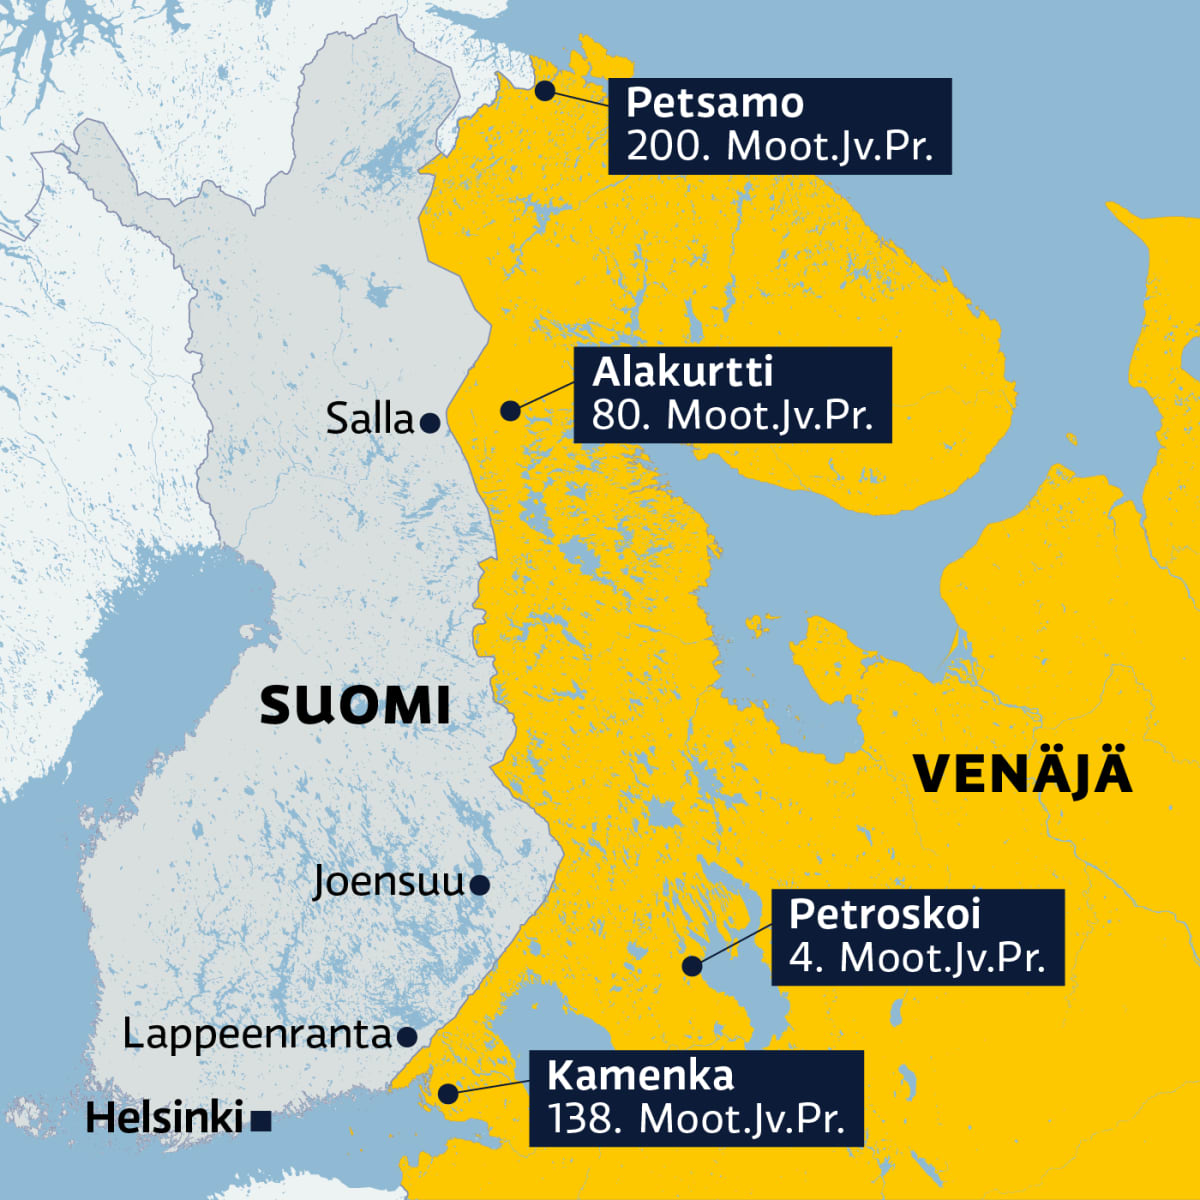 Venäjä aikoo perustaa Karjalaan uuden armeijakunnan – nämä Suomen  lähiseudun varuskunnat voivat kasvaa merkittävästi